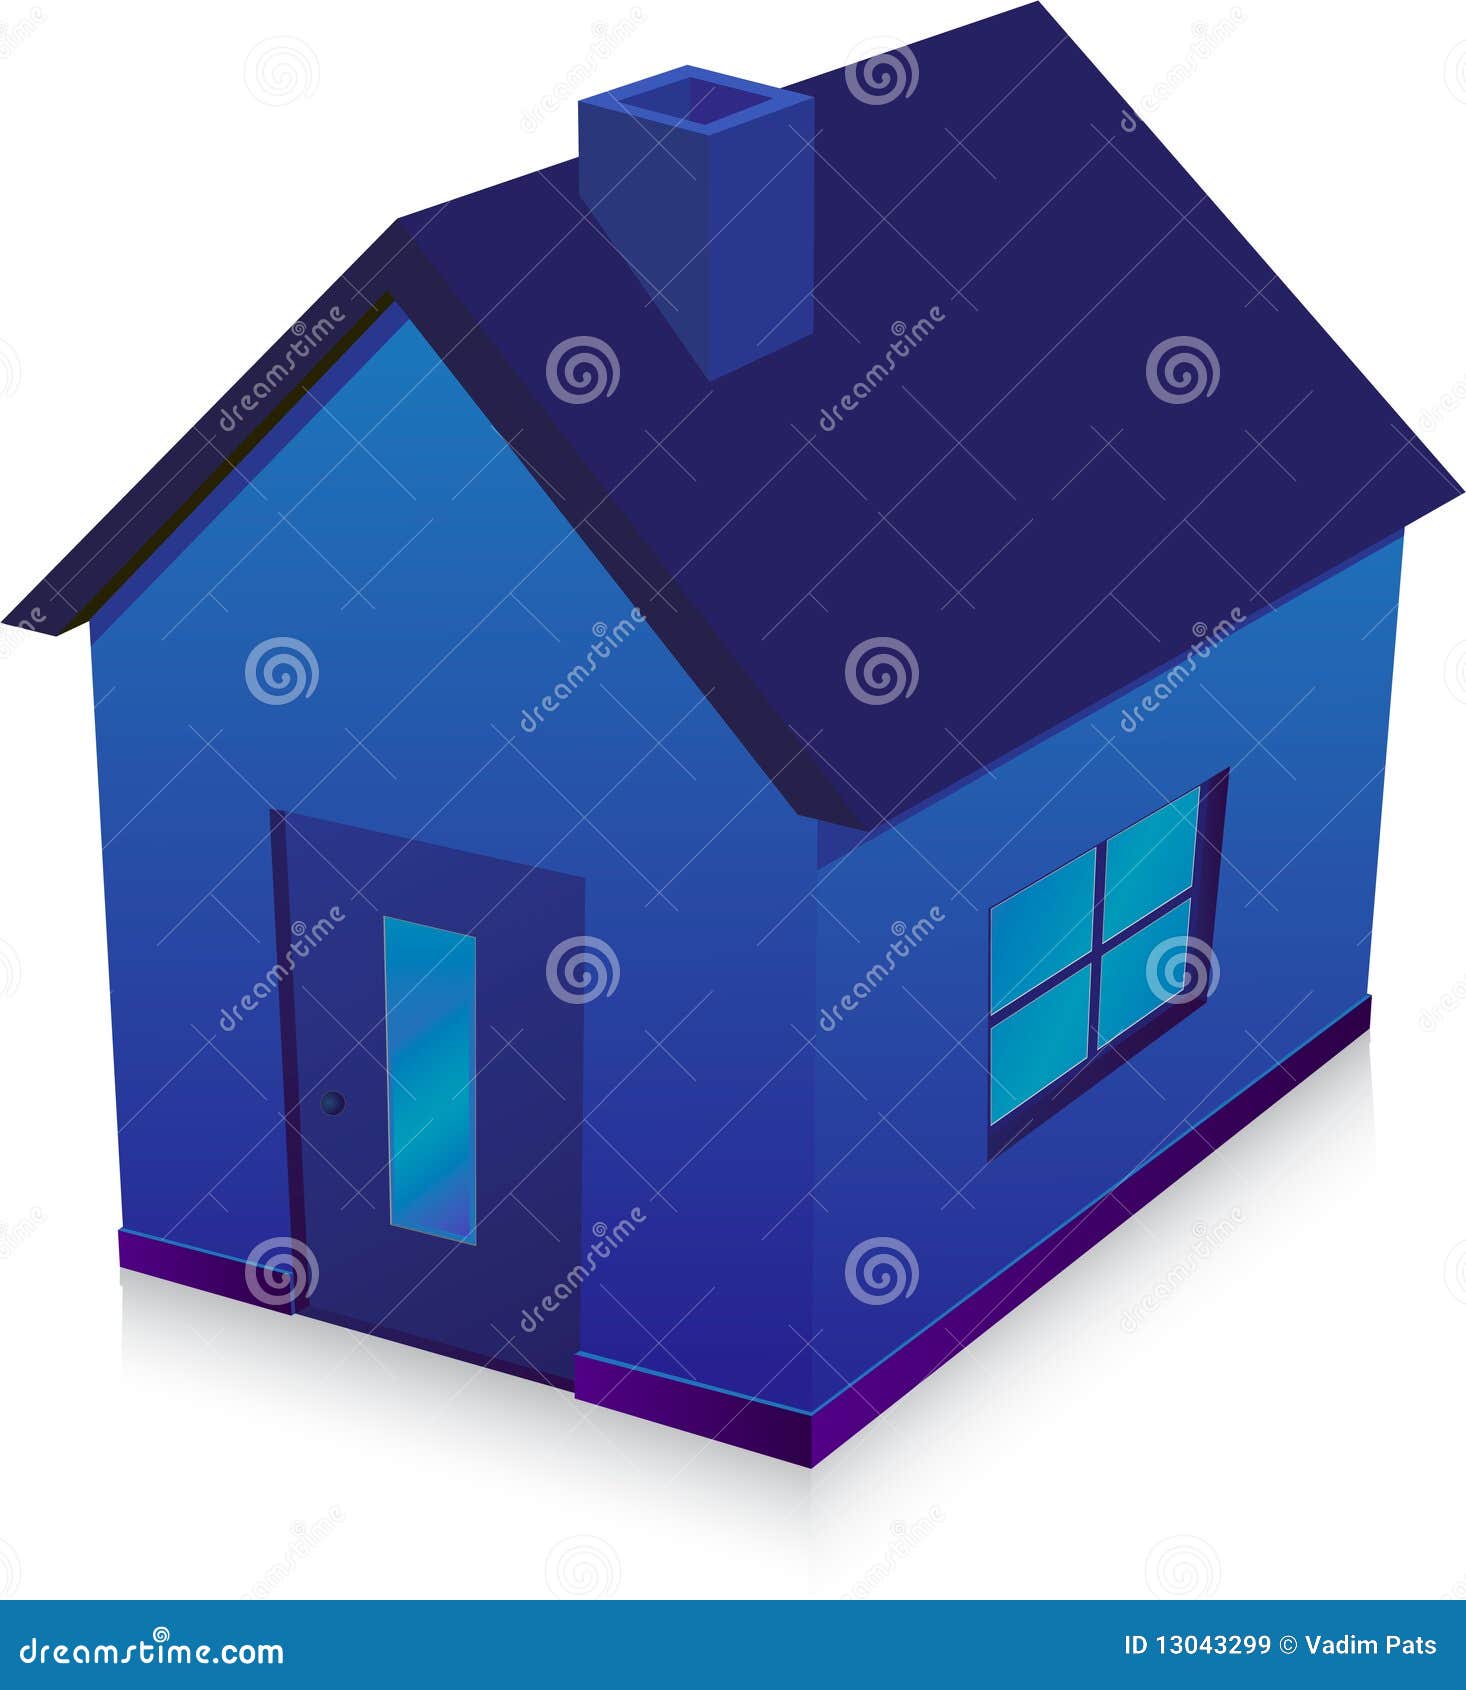  Maison  bleue  illustration de vecteur Illustration du 